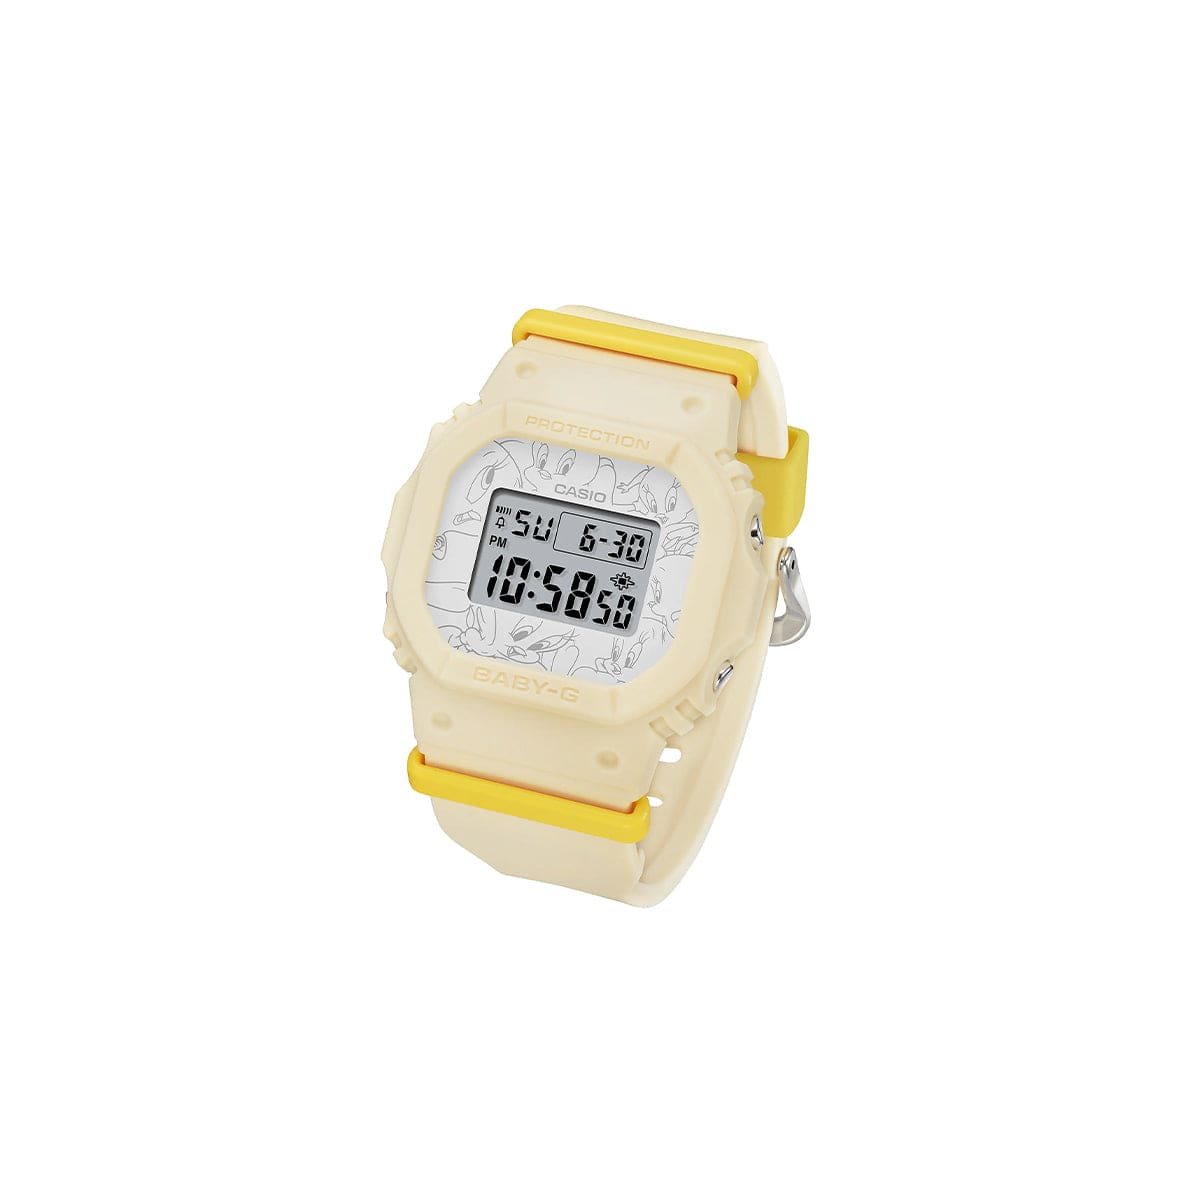 Rare Working Casio G-Shock Watch Baby GBG-310 Unisex | eBay